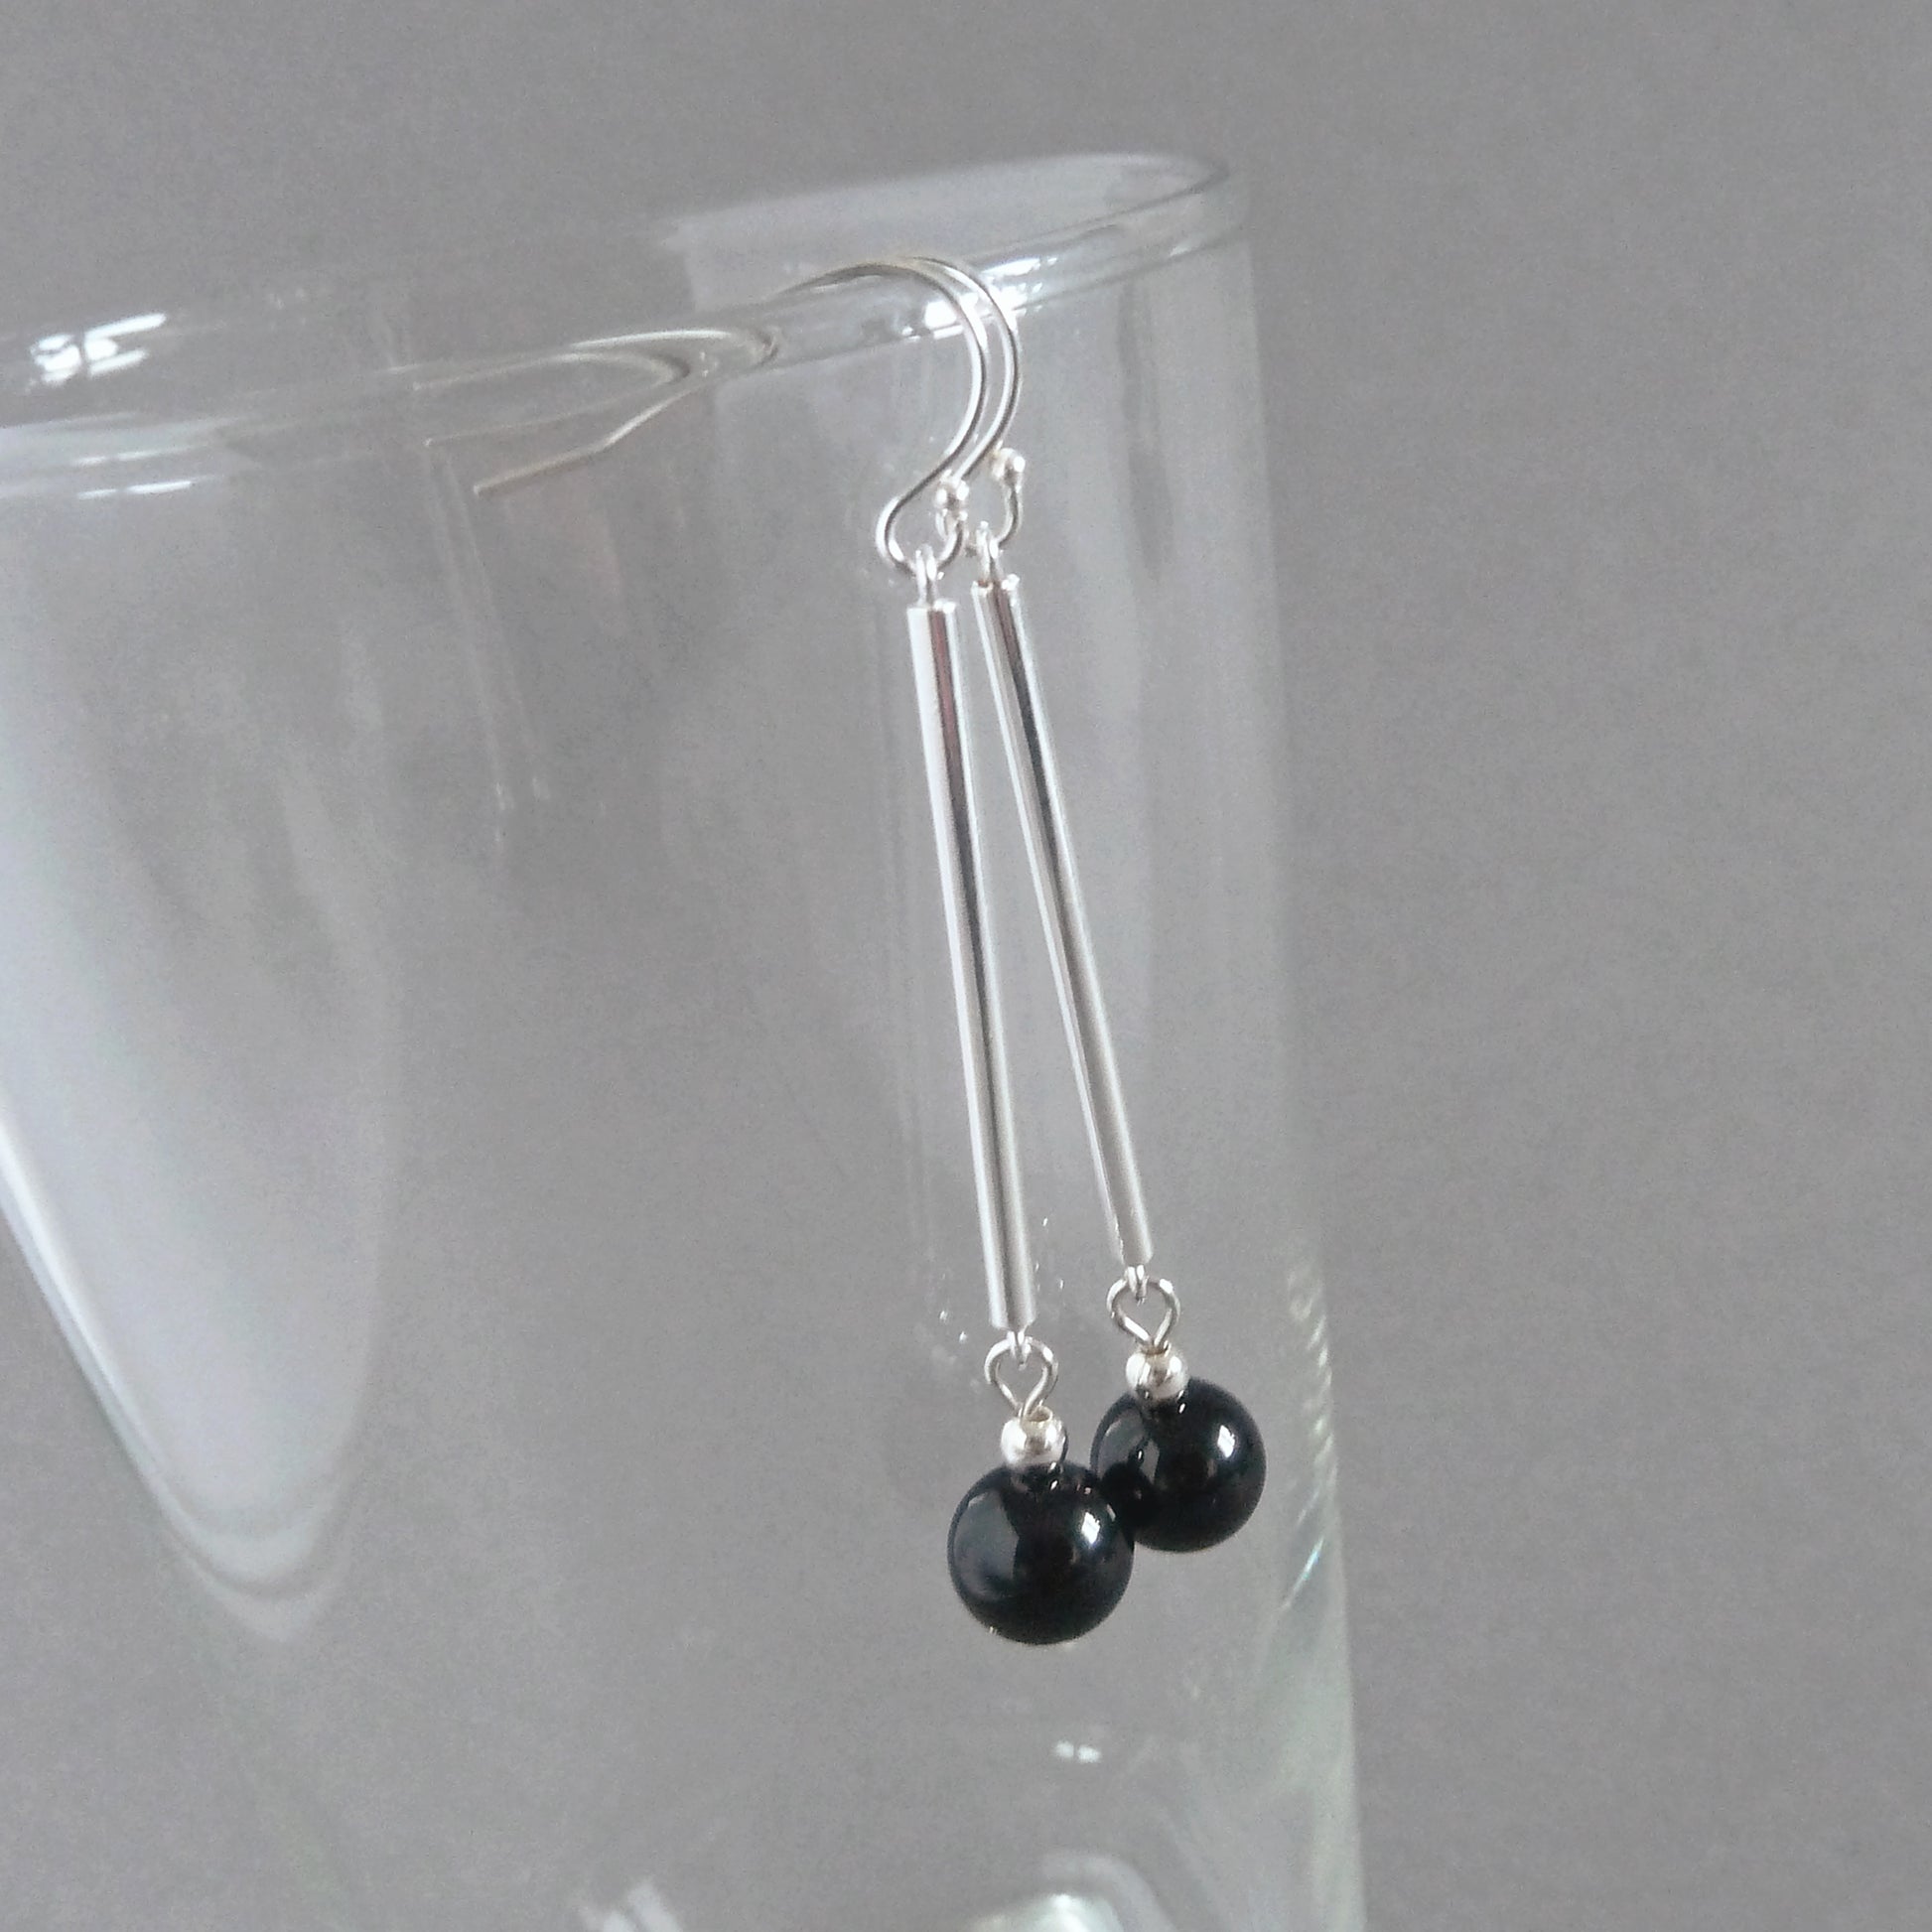 Simple black dangly earrings